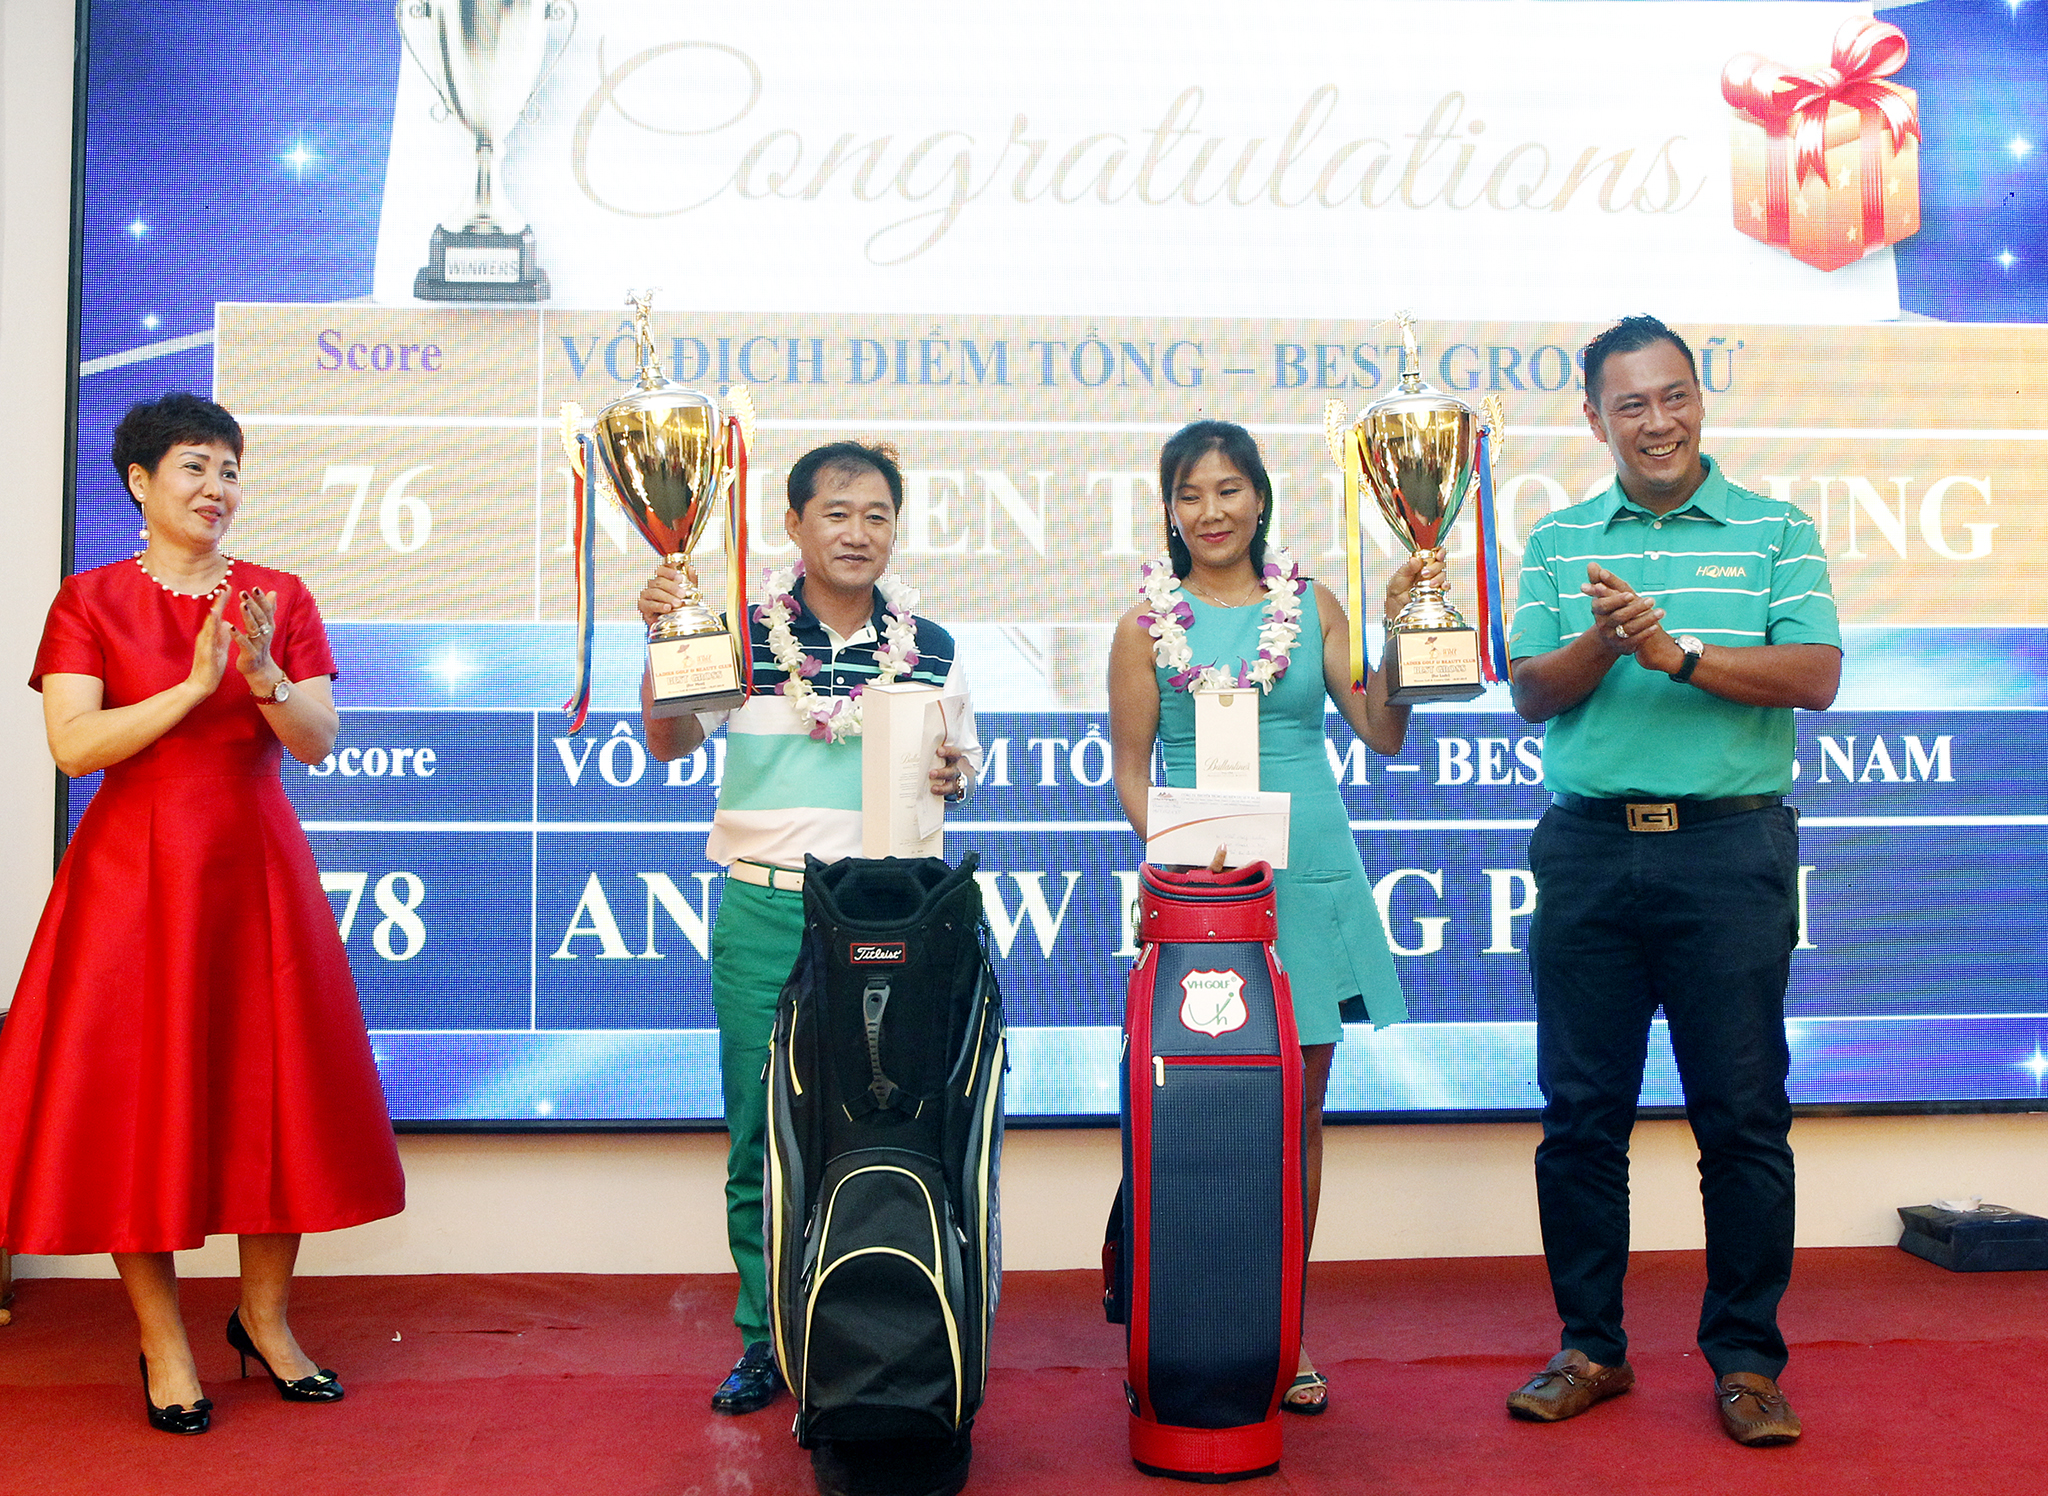 Andrew Hùng Phạm và Nguyễn Thị Ngọc Dung đạt Best Gross tại giải golf Ladies Golf & Beauty Club